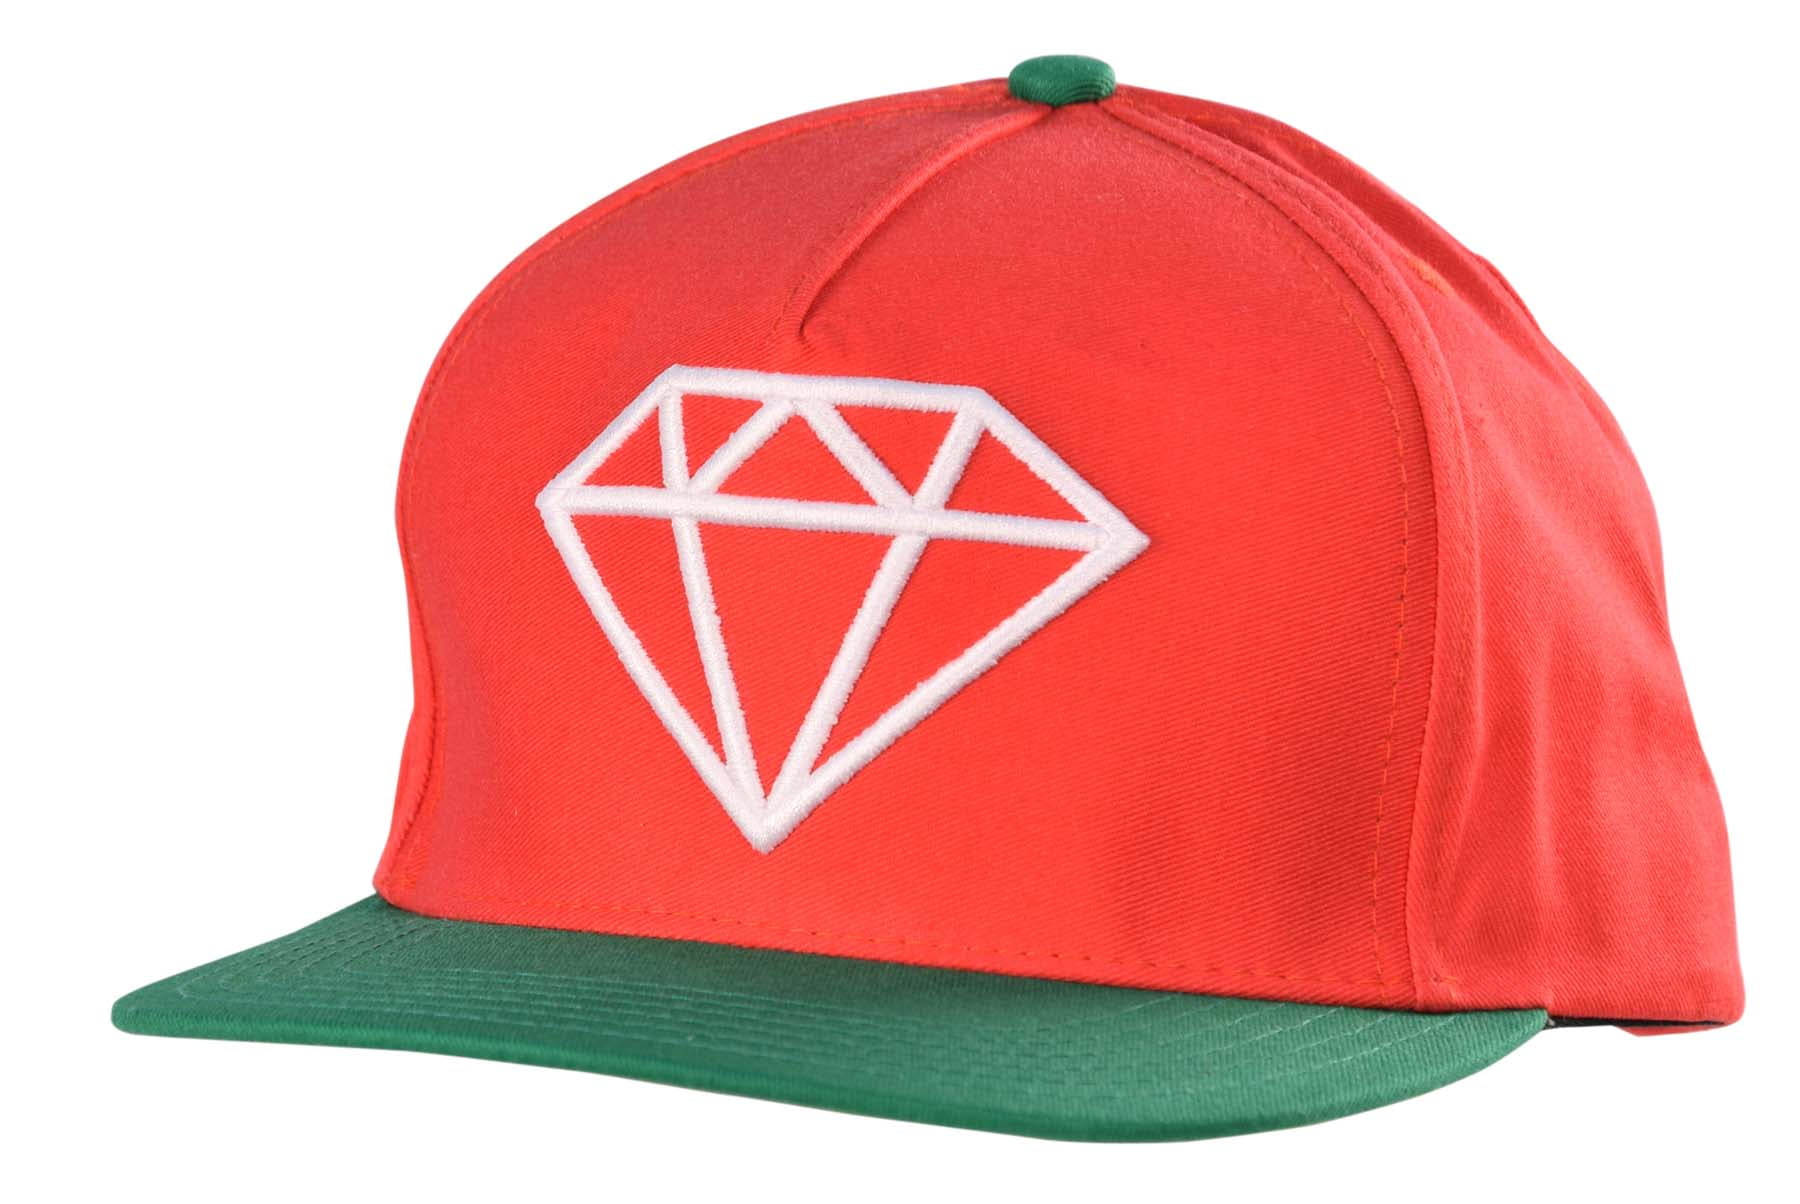 DIAMOND SUPPLY CO SNAPBACK RED WHITE GREEN HAT NOS SKATEBOARD SKATE CAP LOGO 